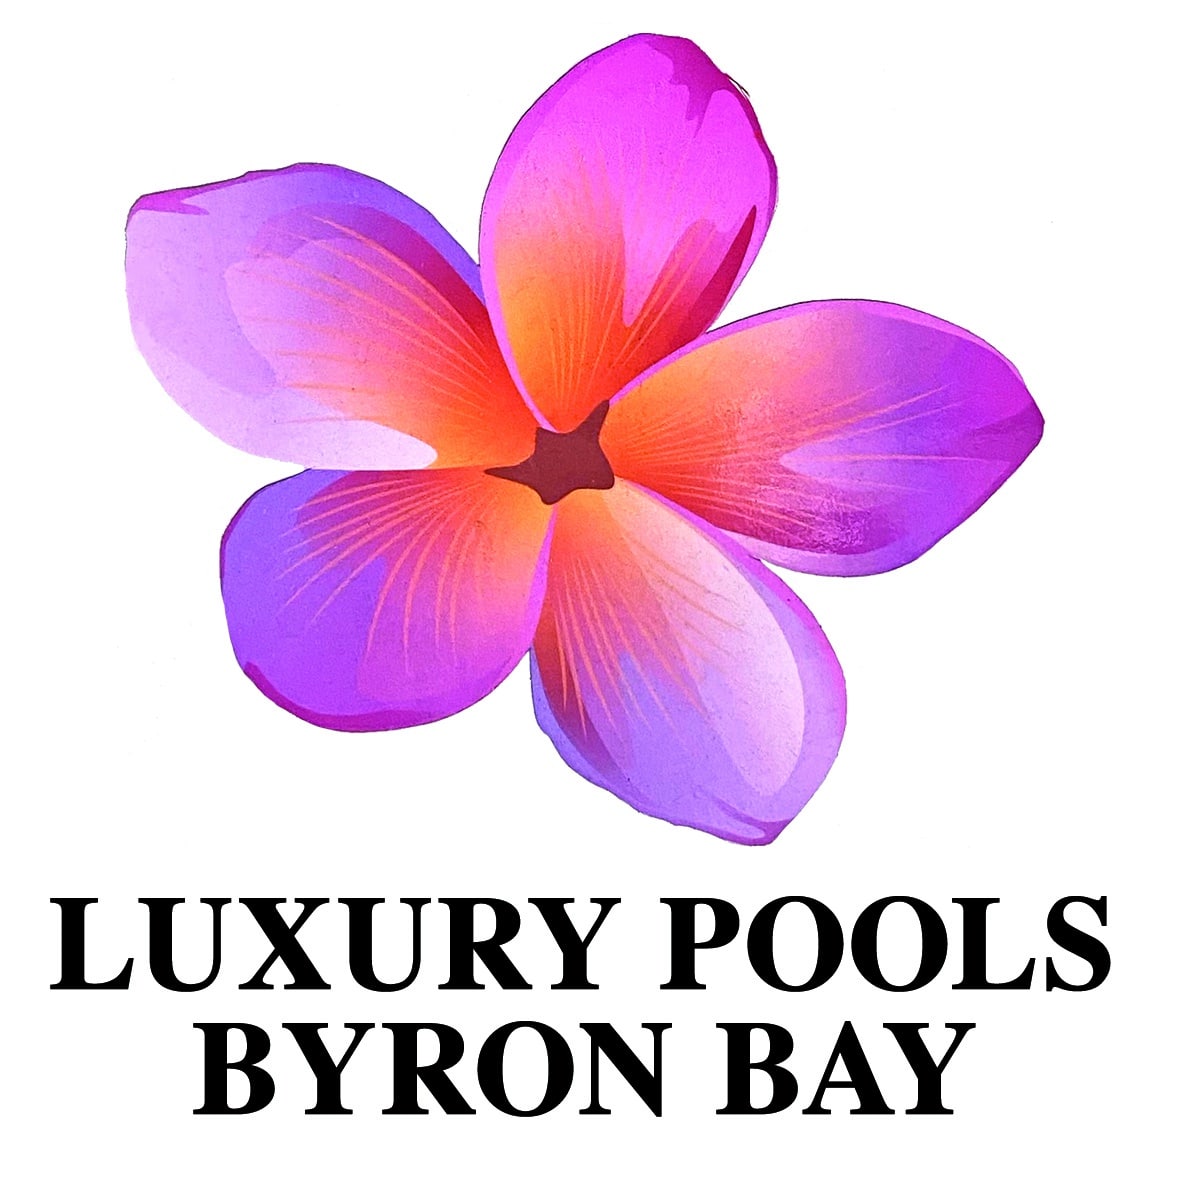 Luxury Pools Byron Bay